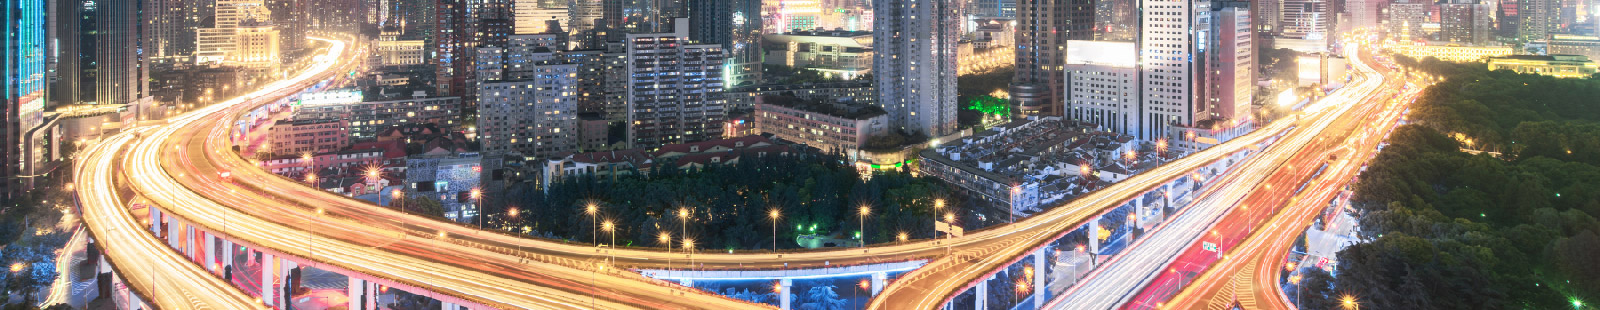 vista aérea de uma interestadual à noite em uma cidade grande